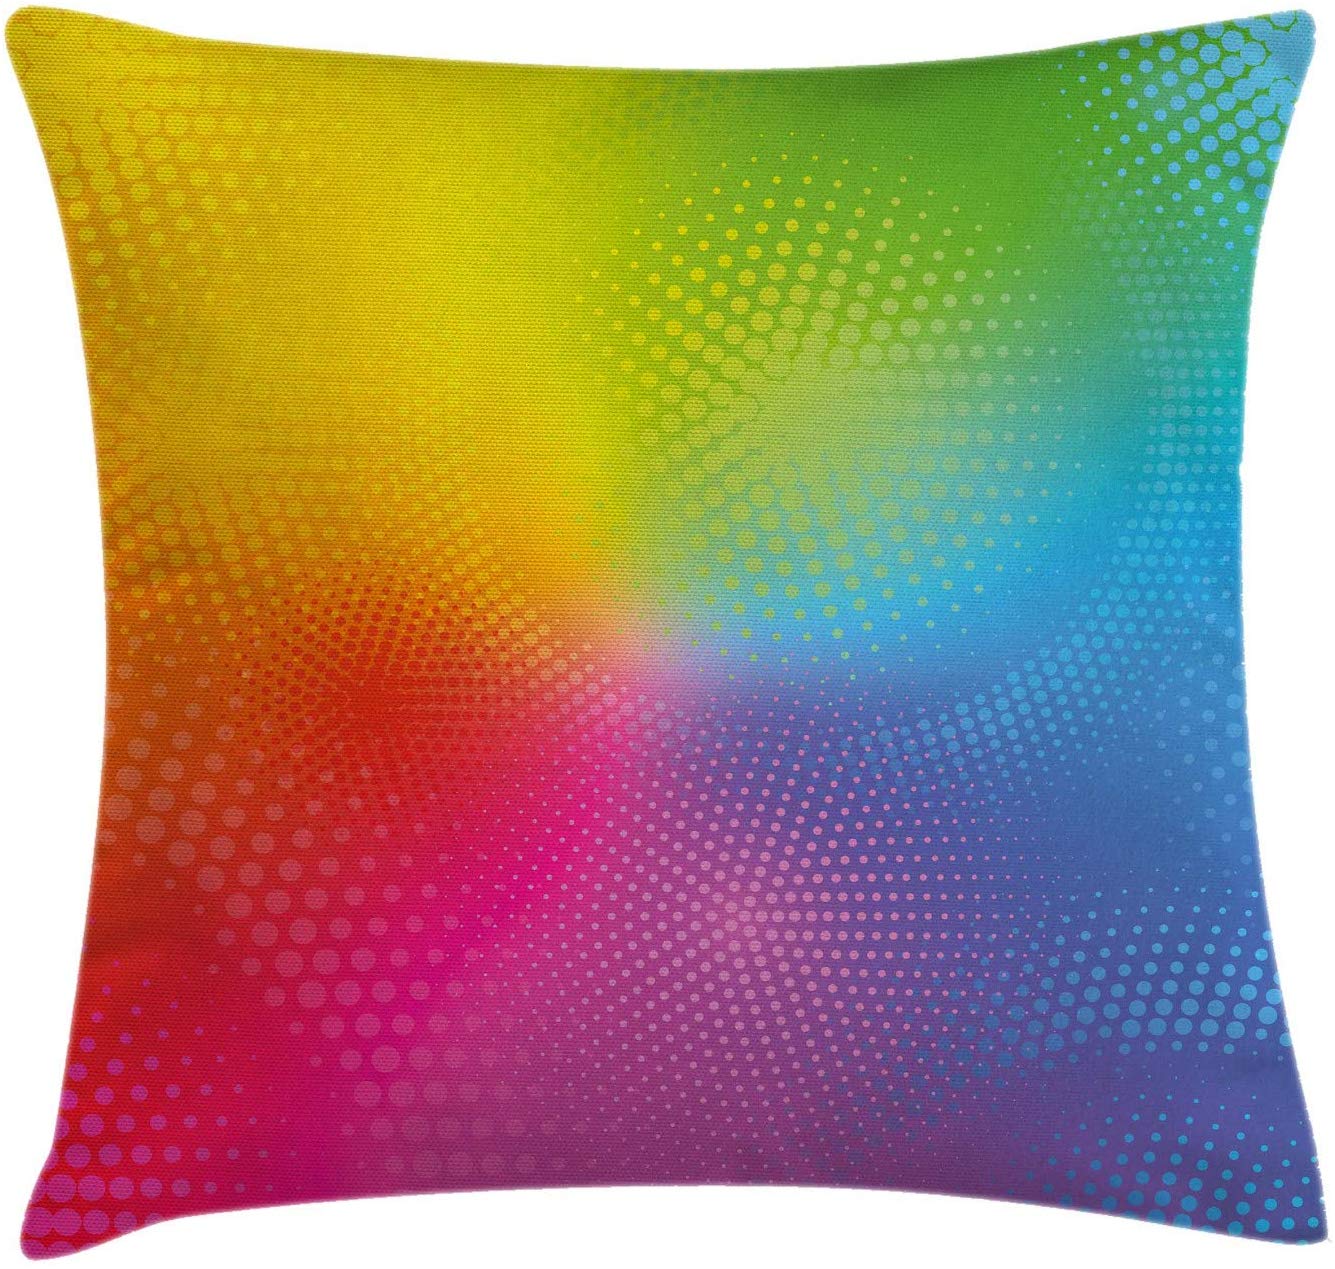 Abakuhausus De_2 Cushion Cover Multicoloured, 60 Cm X 60 Cm